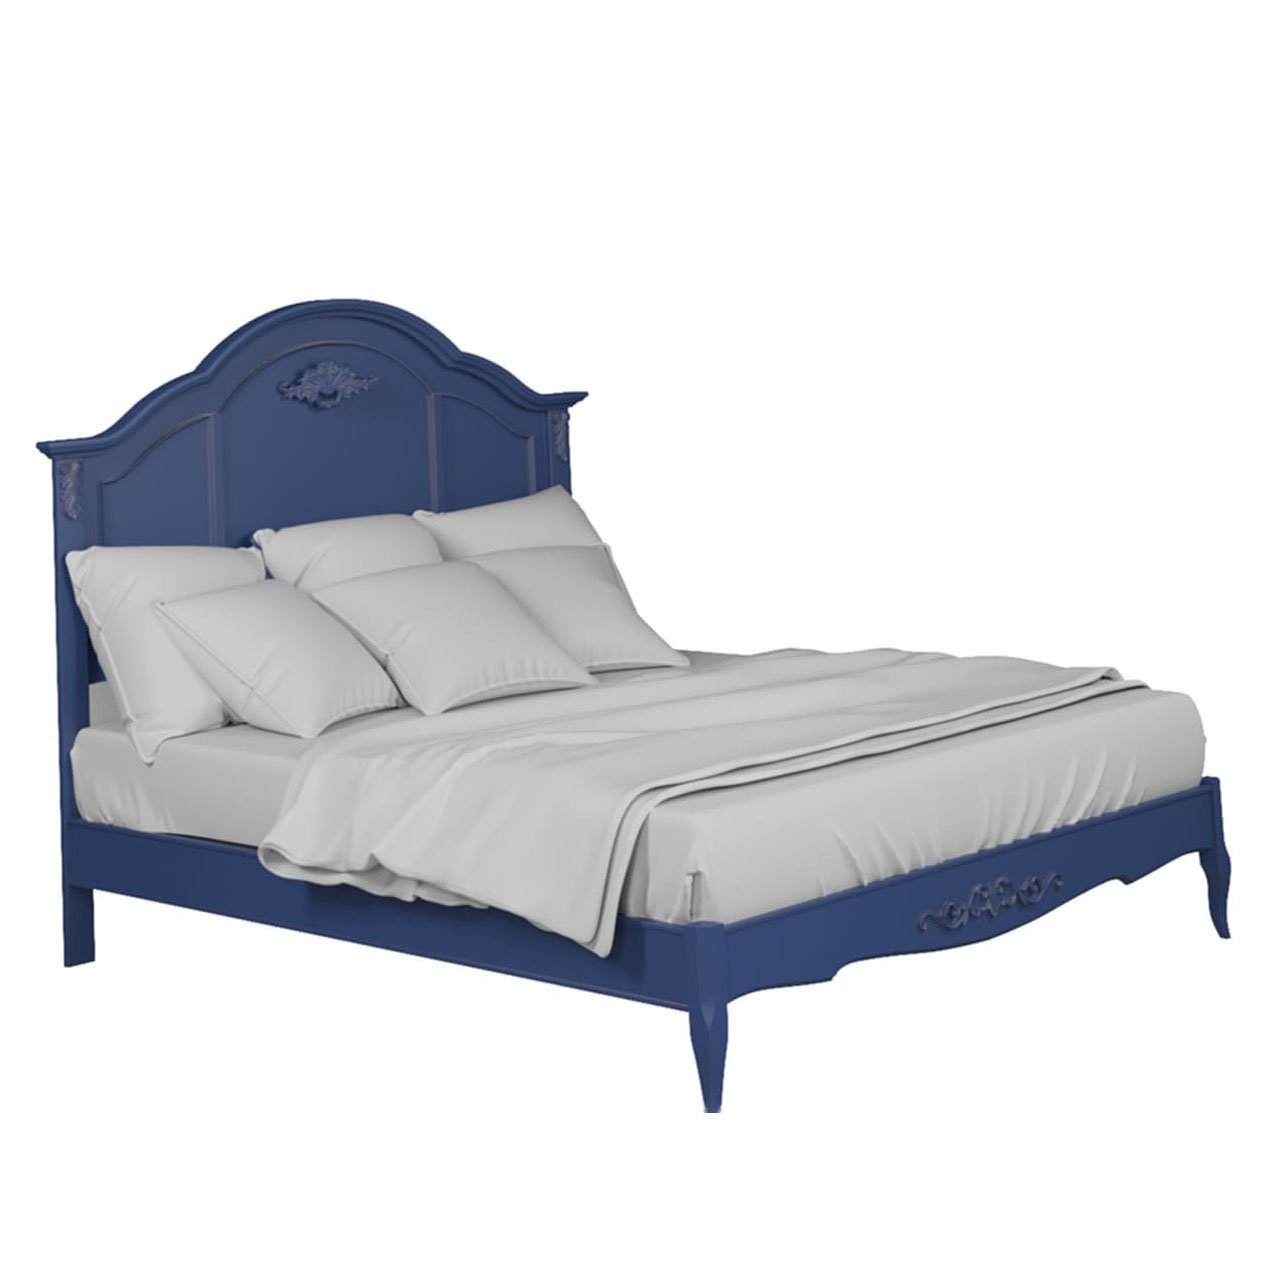 Кровать Aletan Provence, полуторная, 140x200 см, цвет: синий (B204IN)B204IN